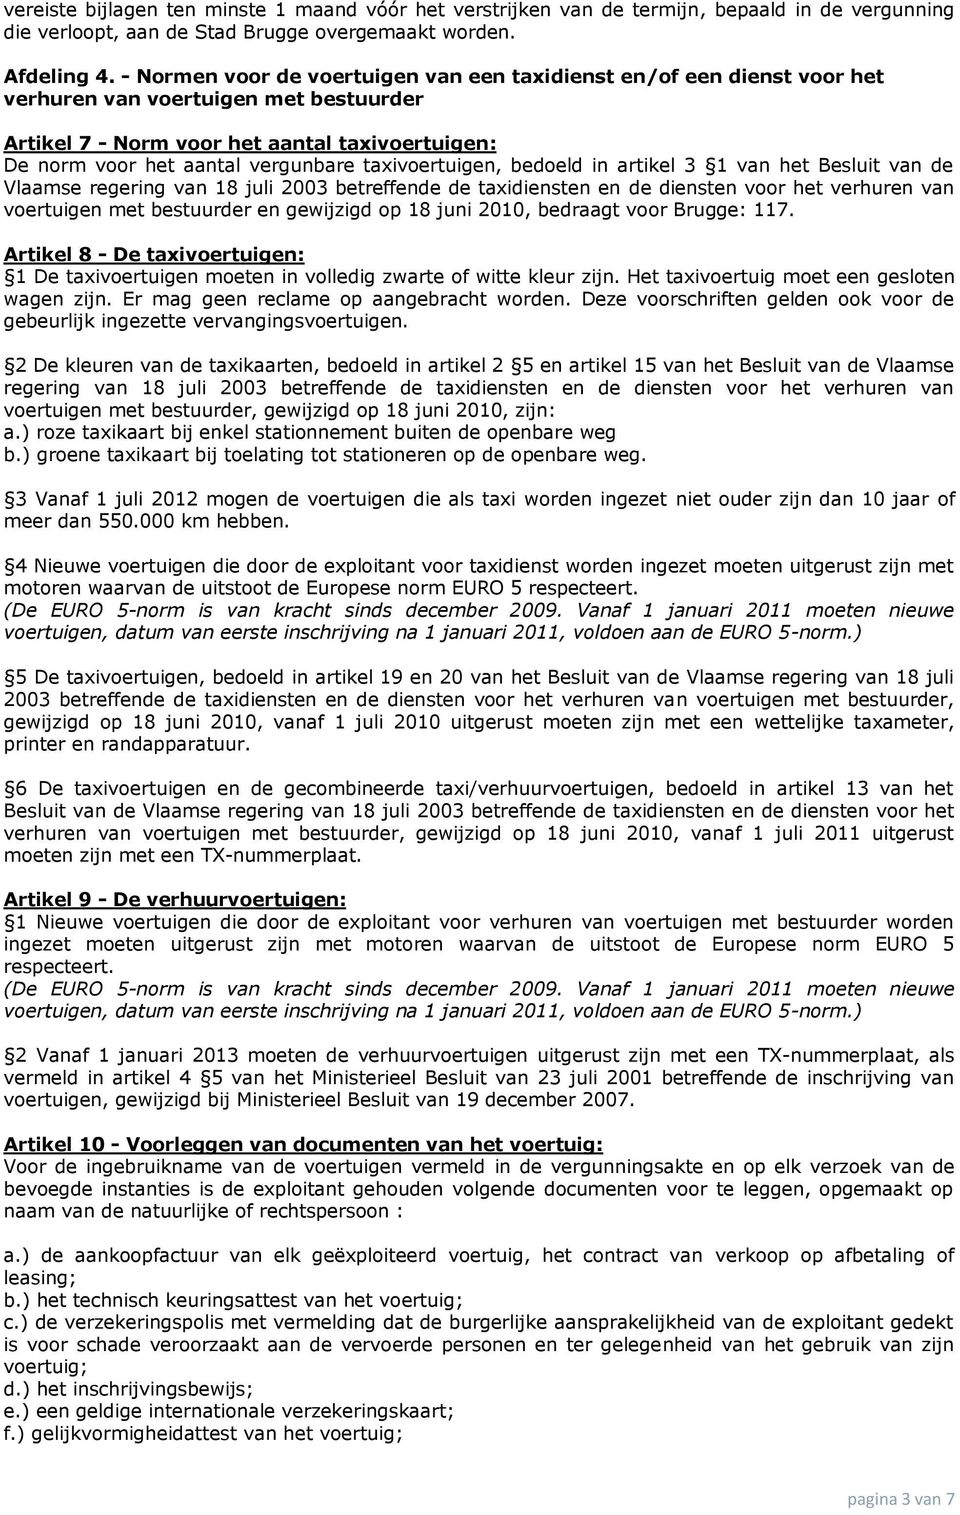 taxivoertuigen, bedoeld in artikel 3 1 van het Besluit van de Vlaamse regering van 18 juli 2003 betreffende de taxidiensten en de diensten voor het verhuren van voertuigen met bestuurder en gewijzigd